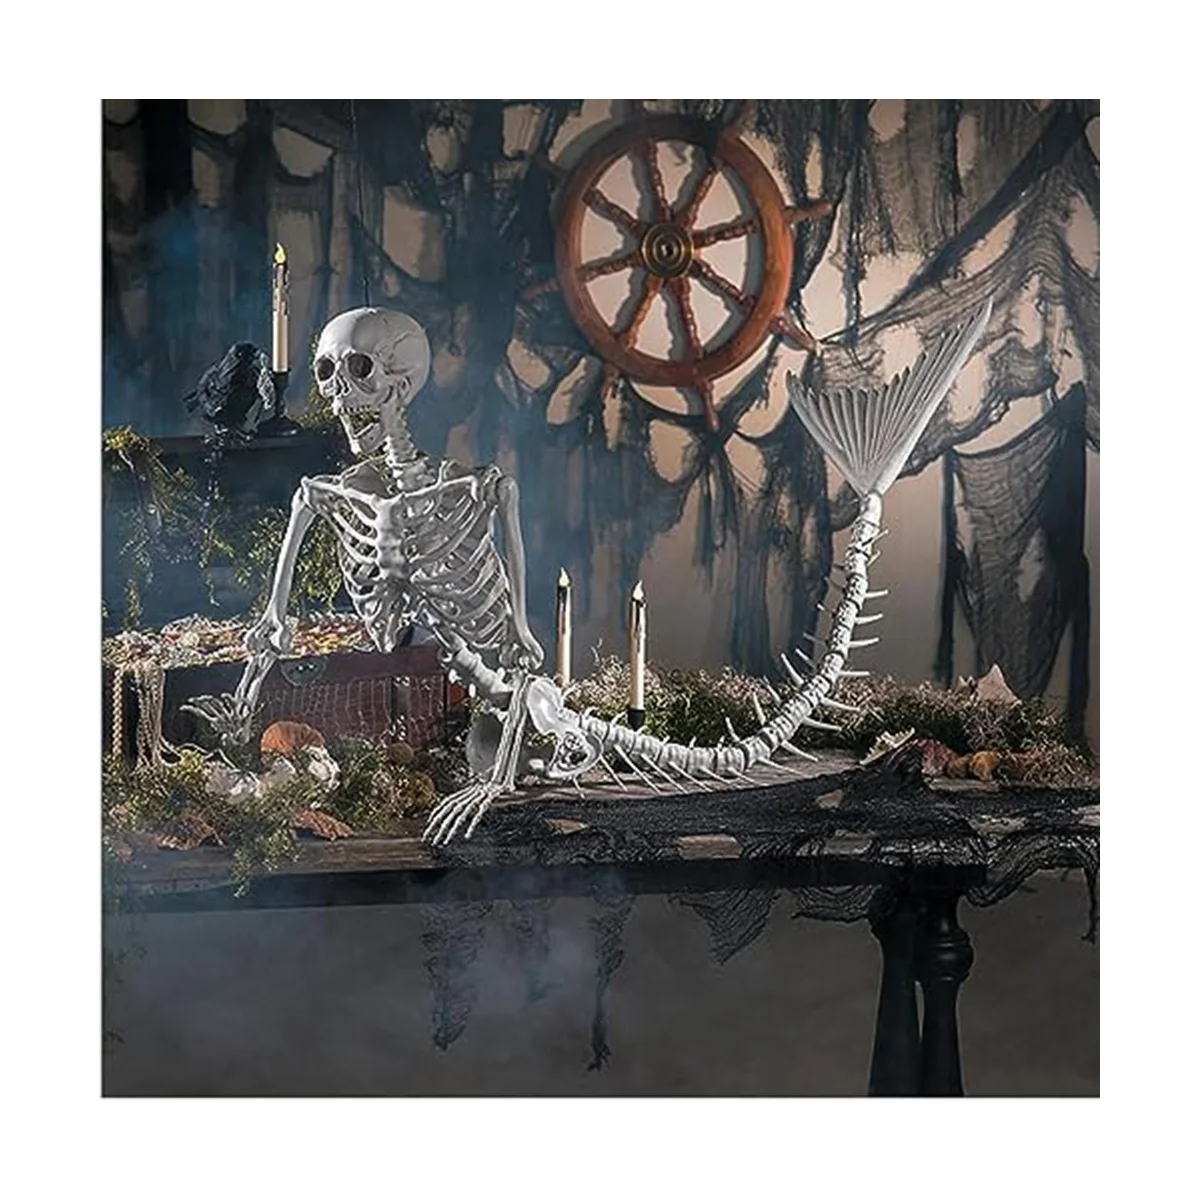 Скелет русалки на Хэллоуин, уличные украшения, страшный скелет на Хэллоуин в натуральную величину для дома с привидениями на кладбище